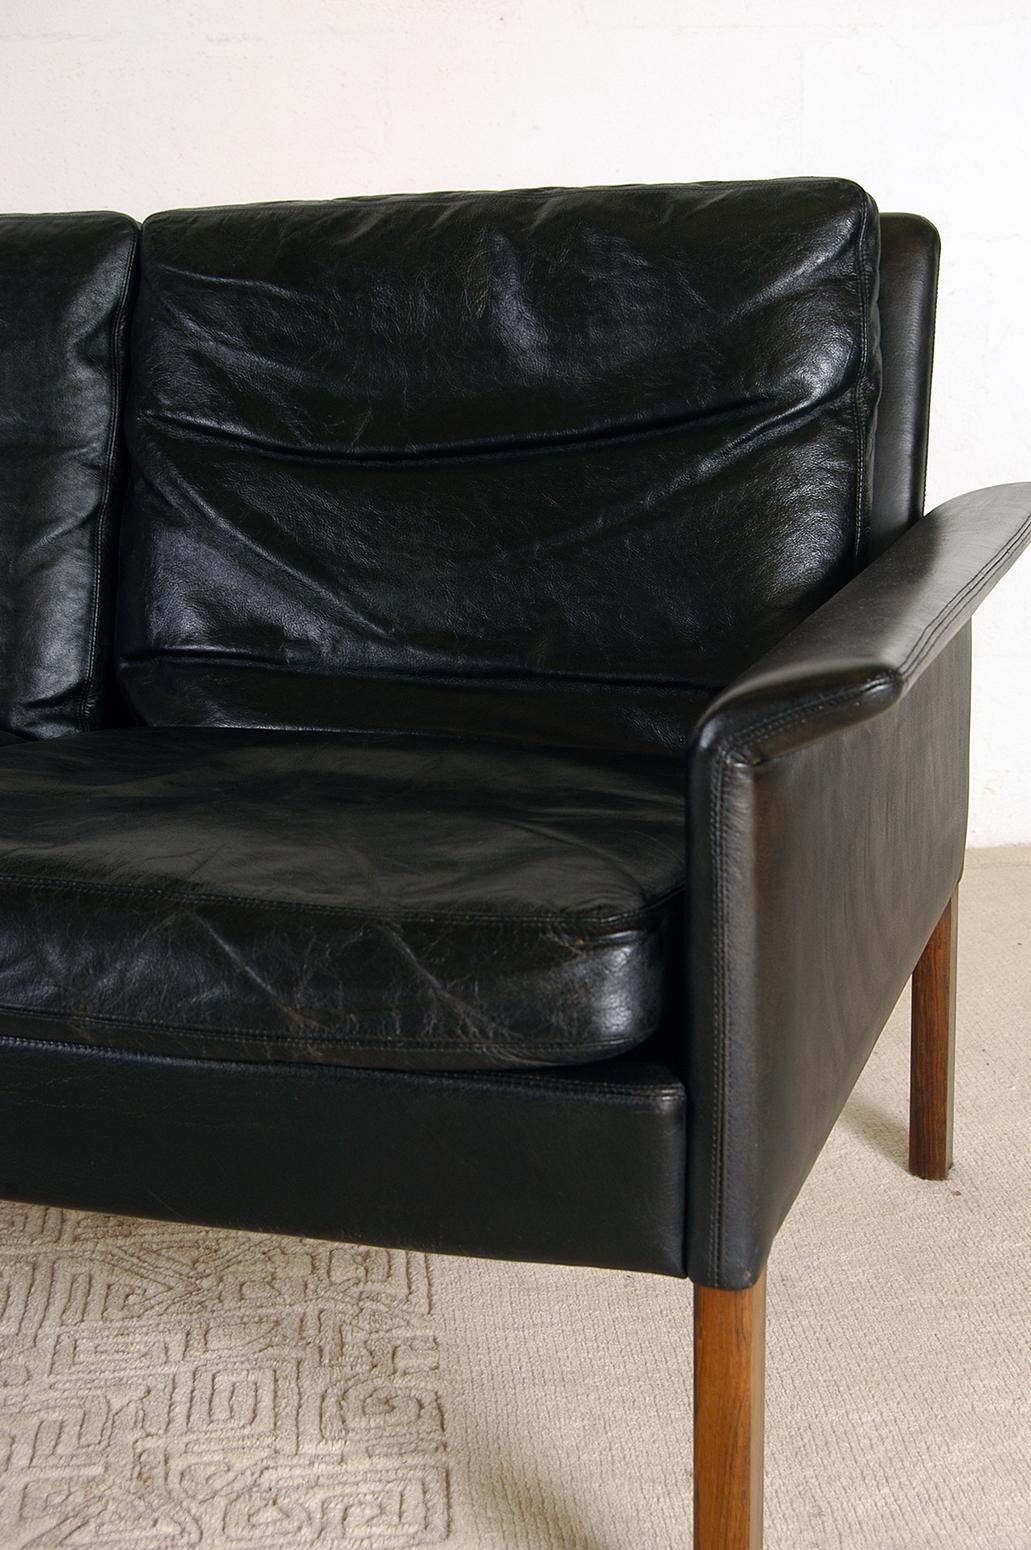 20th Century 1960s Danish Midcentury Black Leather Sofa by Hans Olsen for Christian Sorensen